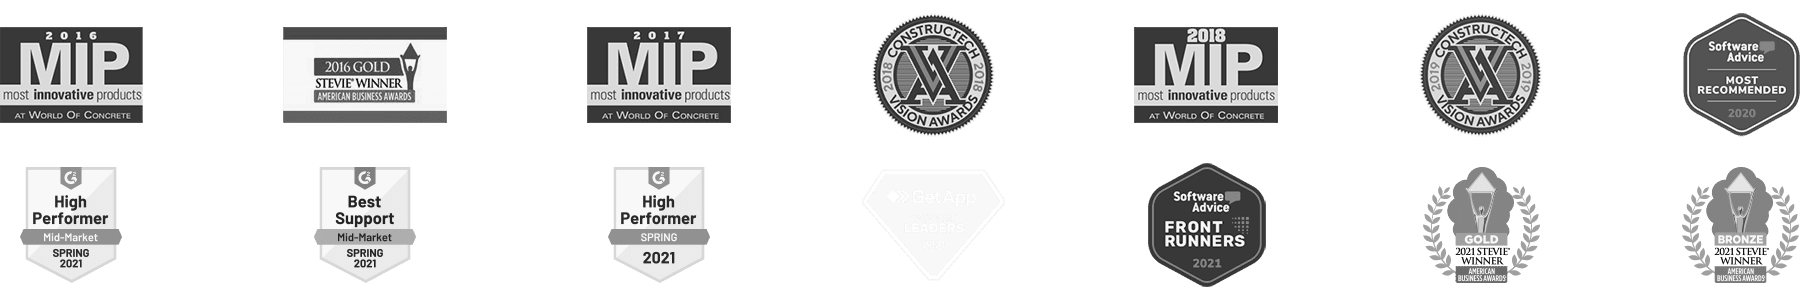 WorkMax Awards logos 2021